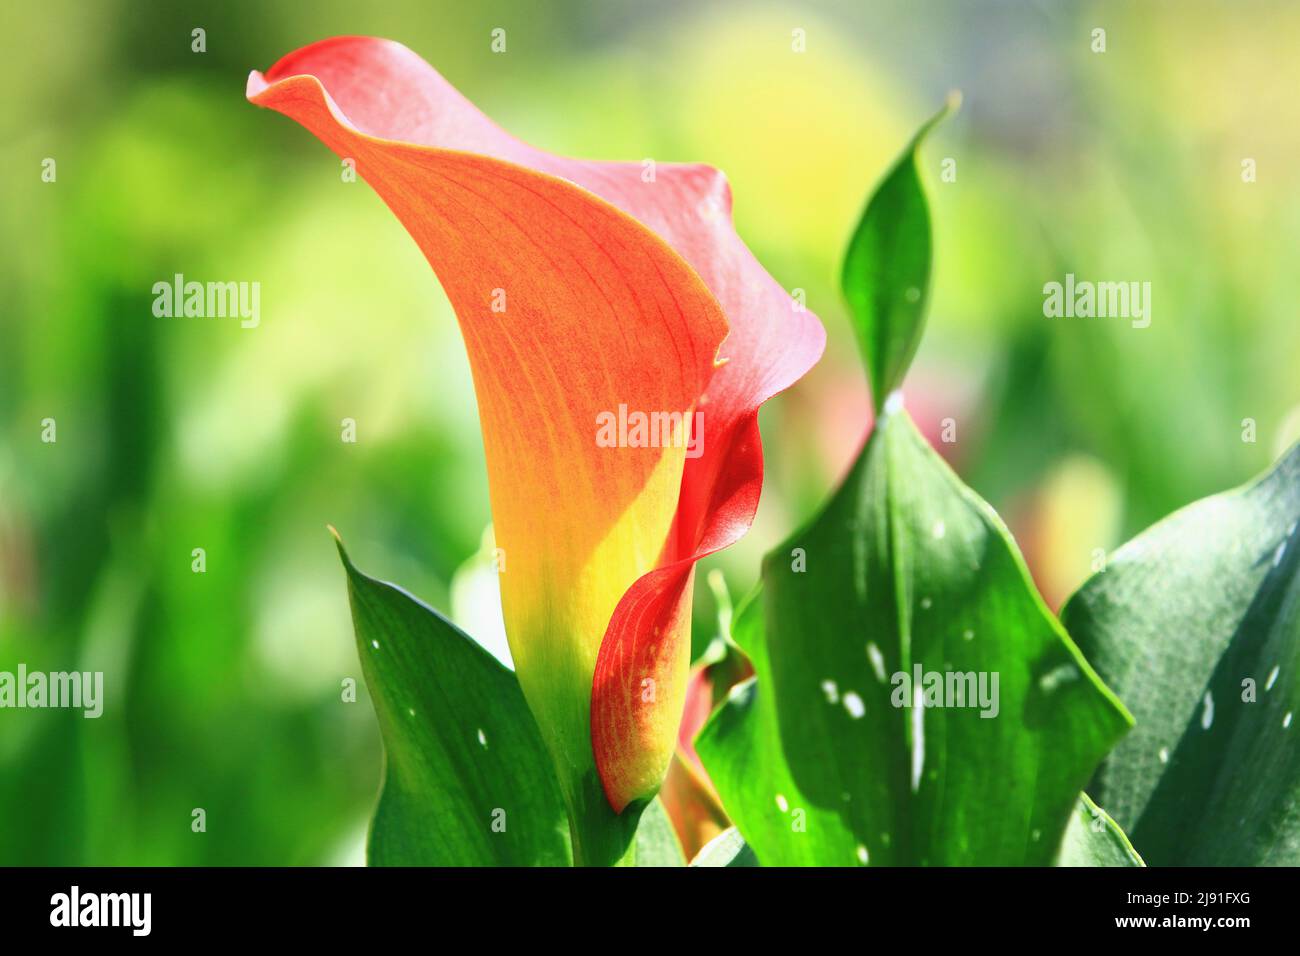 Fiore colorato Calla Lily(Arum Lily,Gold Calla) fiore, primo piano di giallo con arancione Calla Lily in piena fioritura in giardino Foto Stock